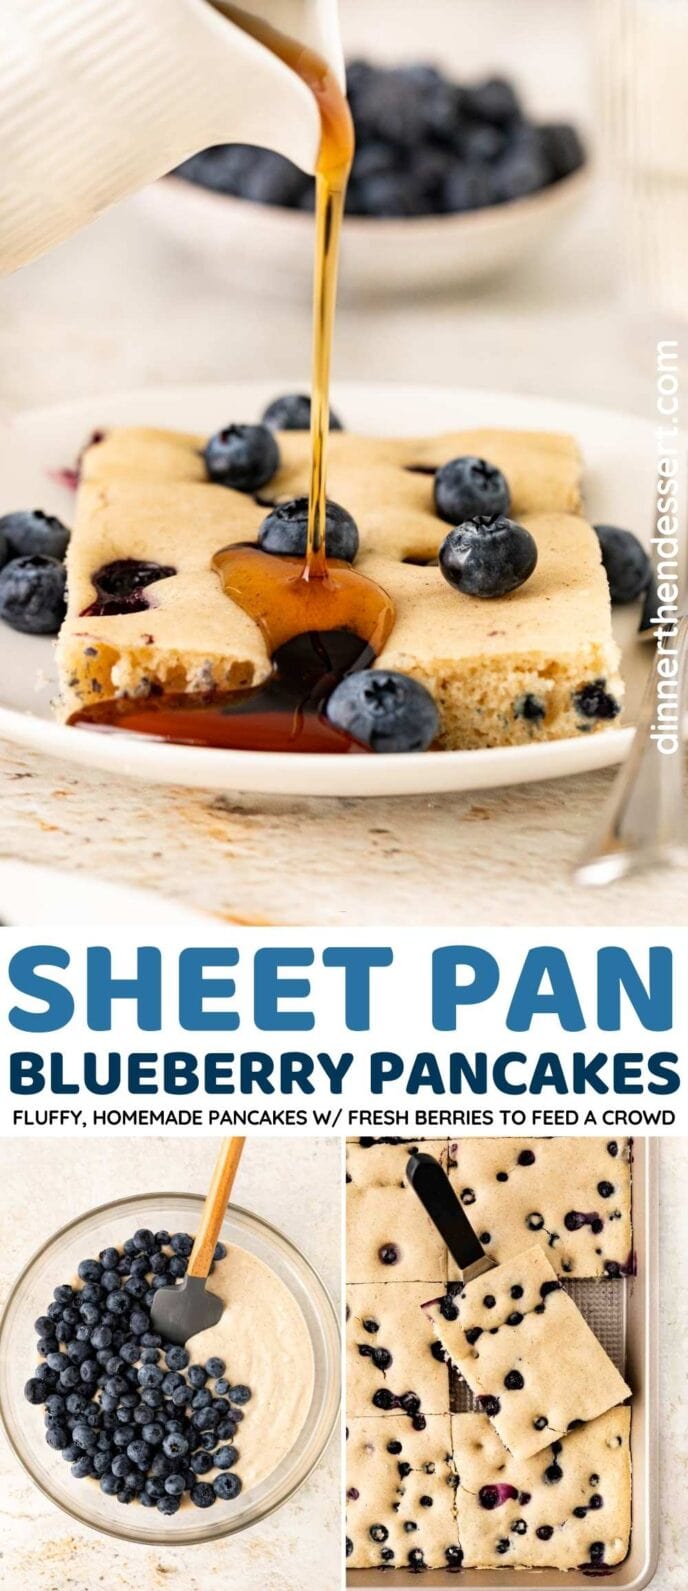 Sheet Pan Blueberry Pancakes Collage